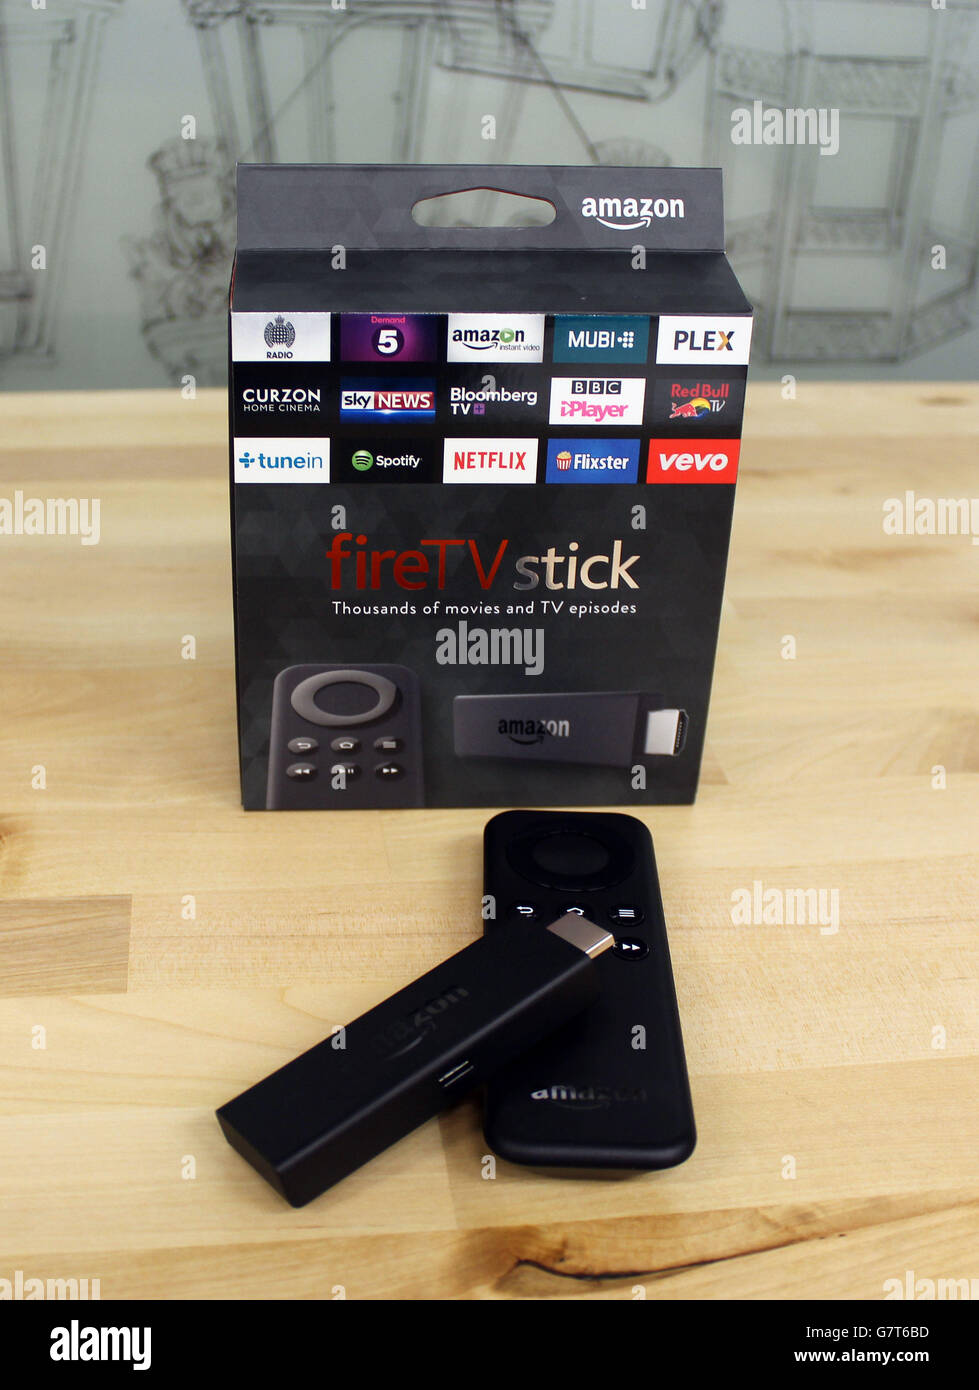 Il nuovo Amazon Fire TV Stick, una versione portatile del suo streaming box che è delle dimensioni di una chiavetta USB e si collega direttamente alla porta HDMI del televisore, che è disponibile per il pre-ordine da oggi. Foto Stock